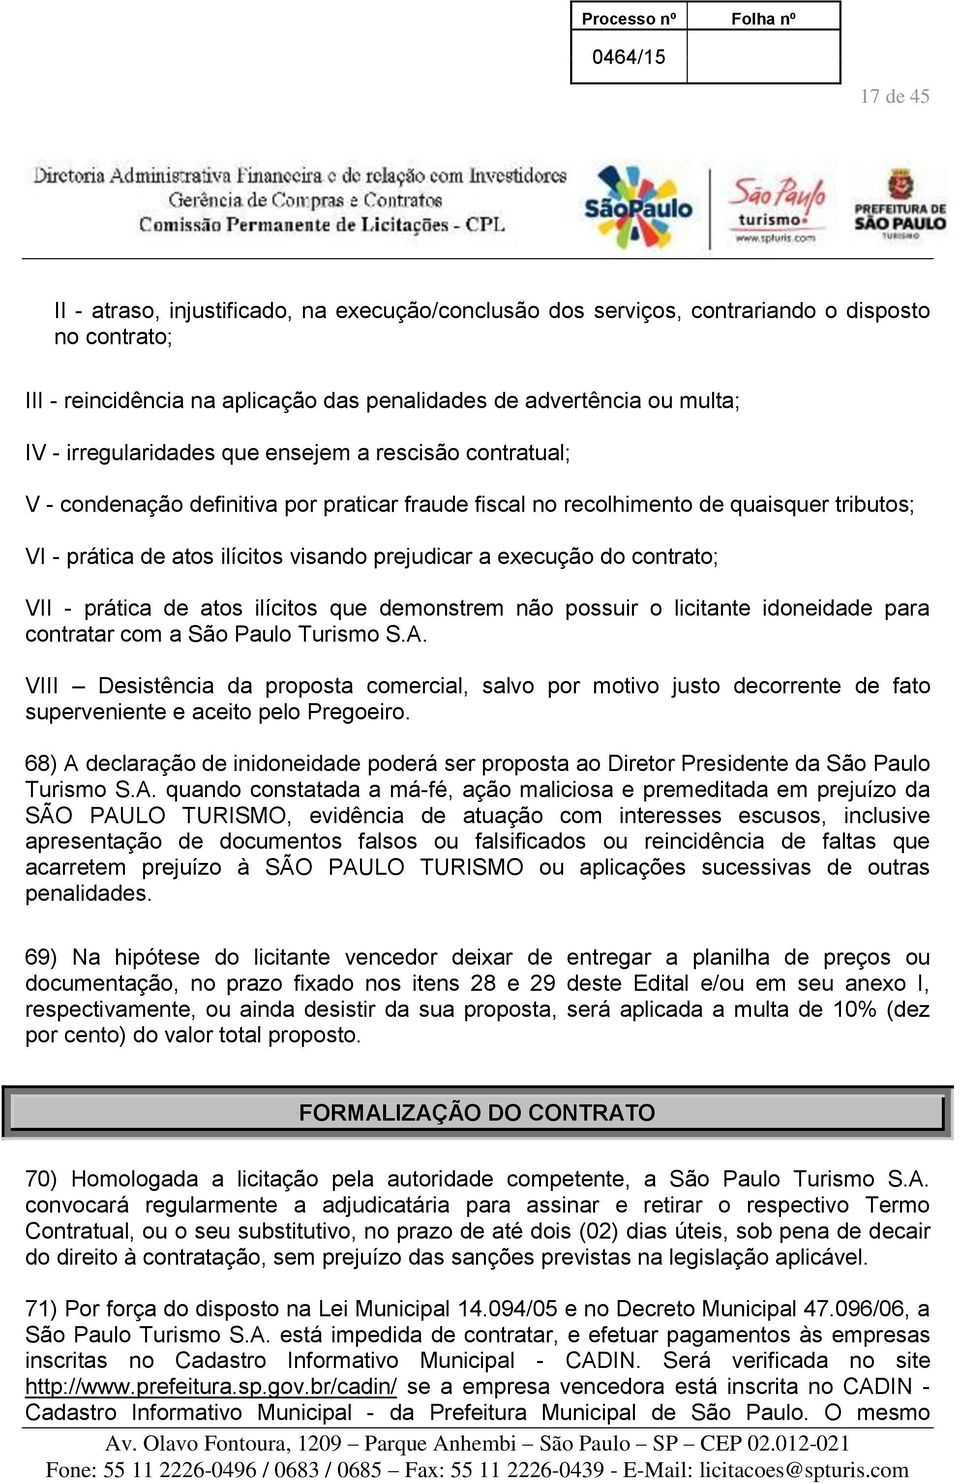 execução do contrato; VII - prática de atos ilícitos que demonstrem não possuir o licitante idoneidade para contratar com a São Paulo Turismo S.A.